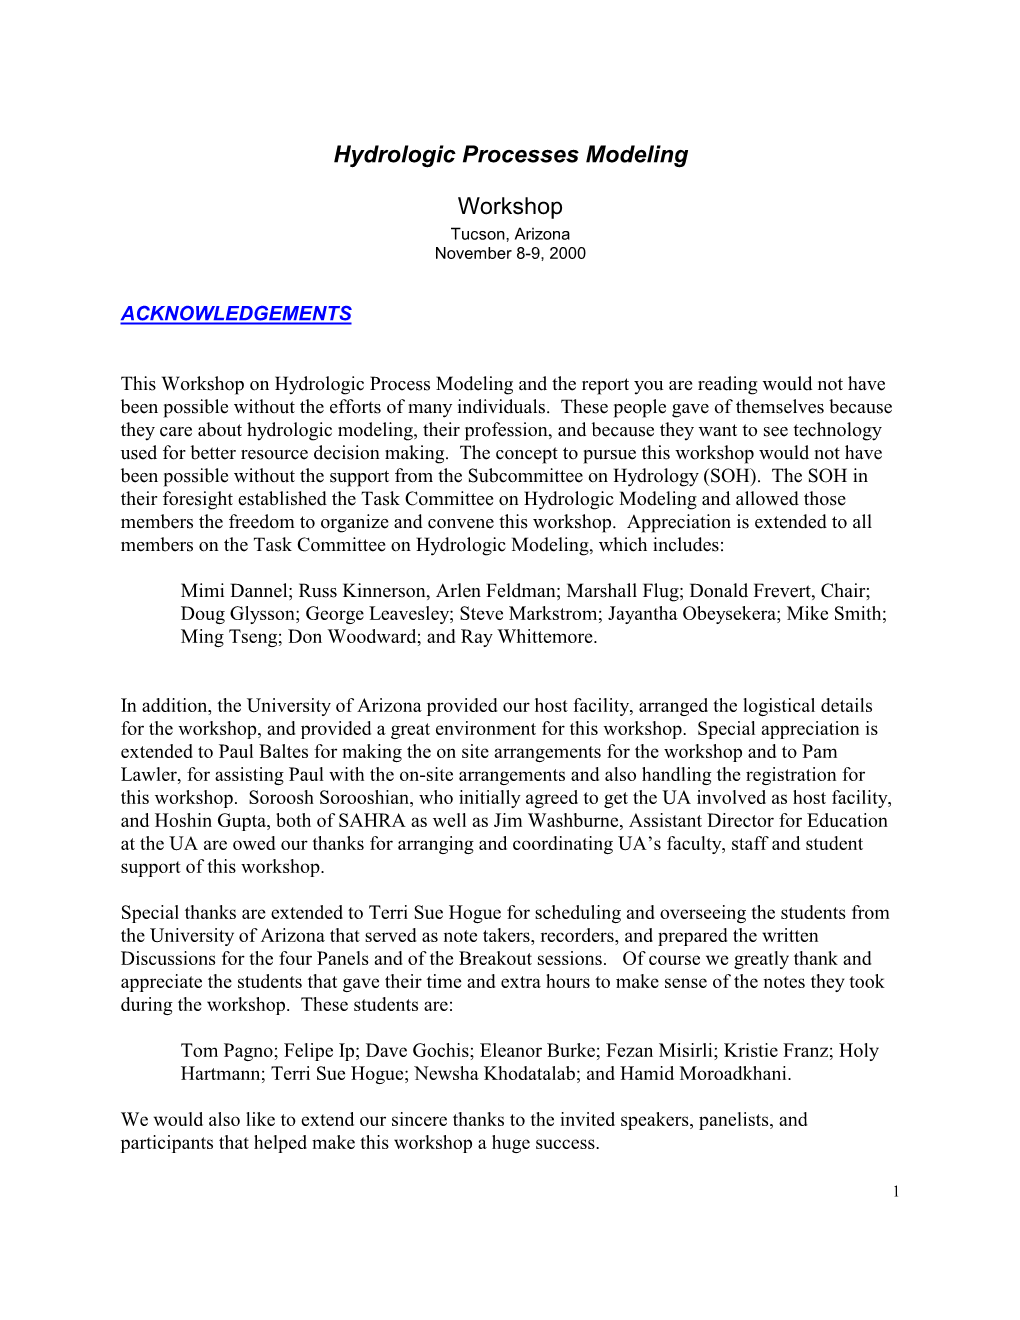 Hydrologic Processes Modeling Workshop Tucson, Arizona November 8-9, 2000